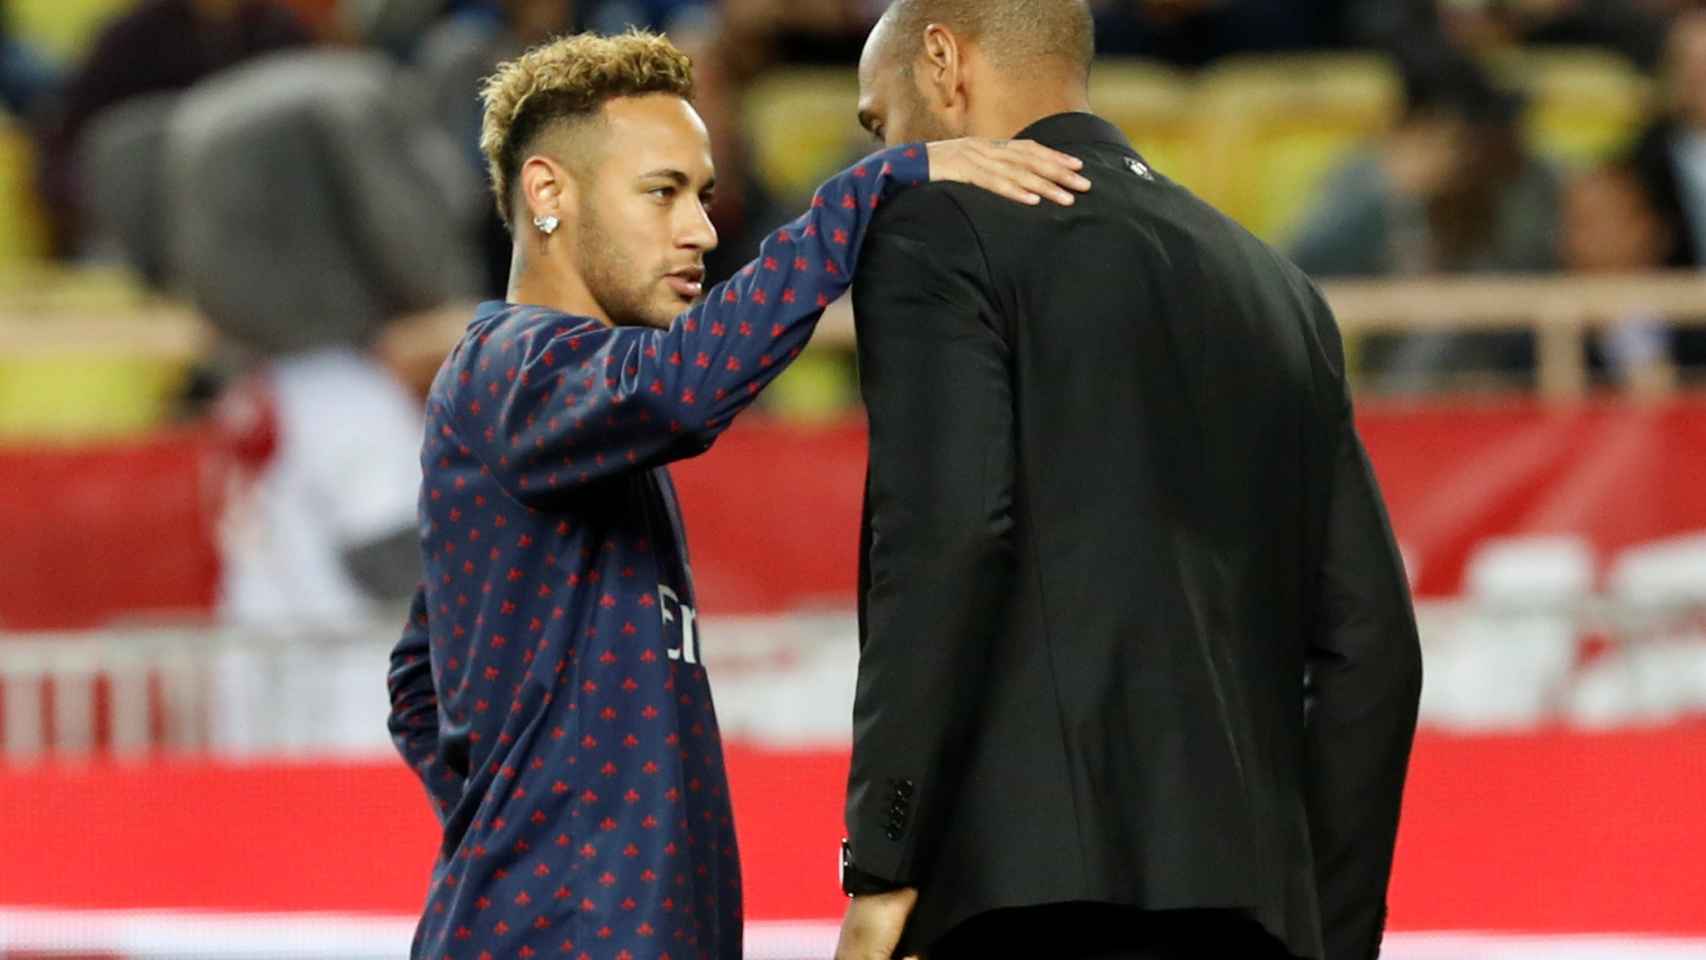 Neymar en el encuentro frente al Monaco